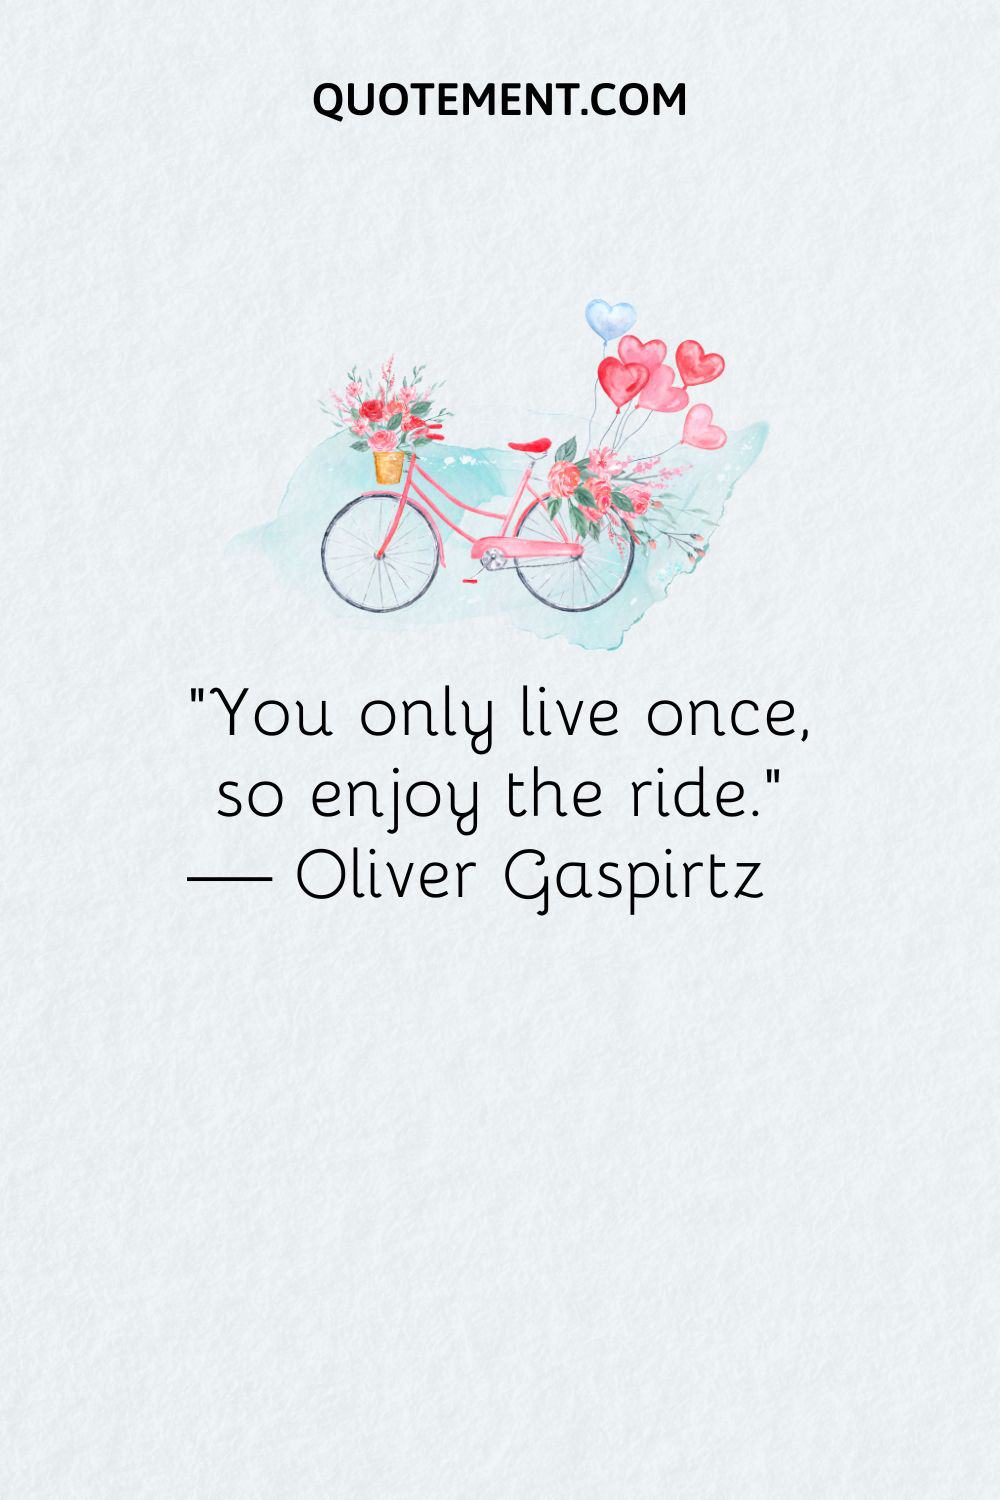 “You only live once, so enjoy the ride.” — Oliver Gaspirtz